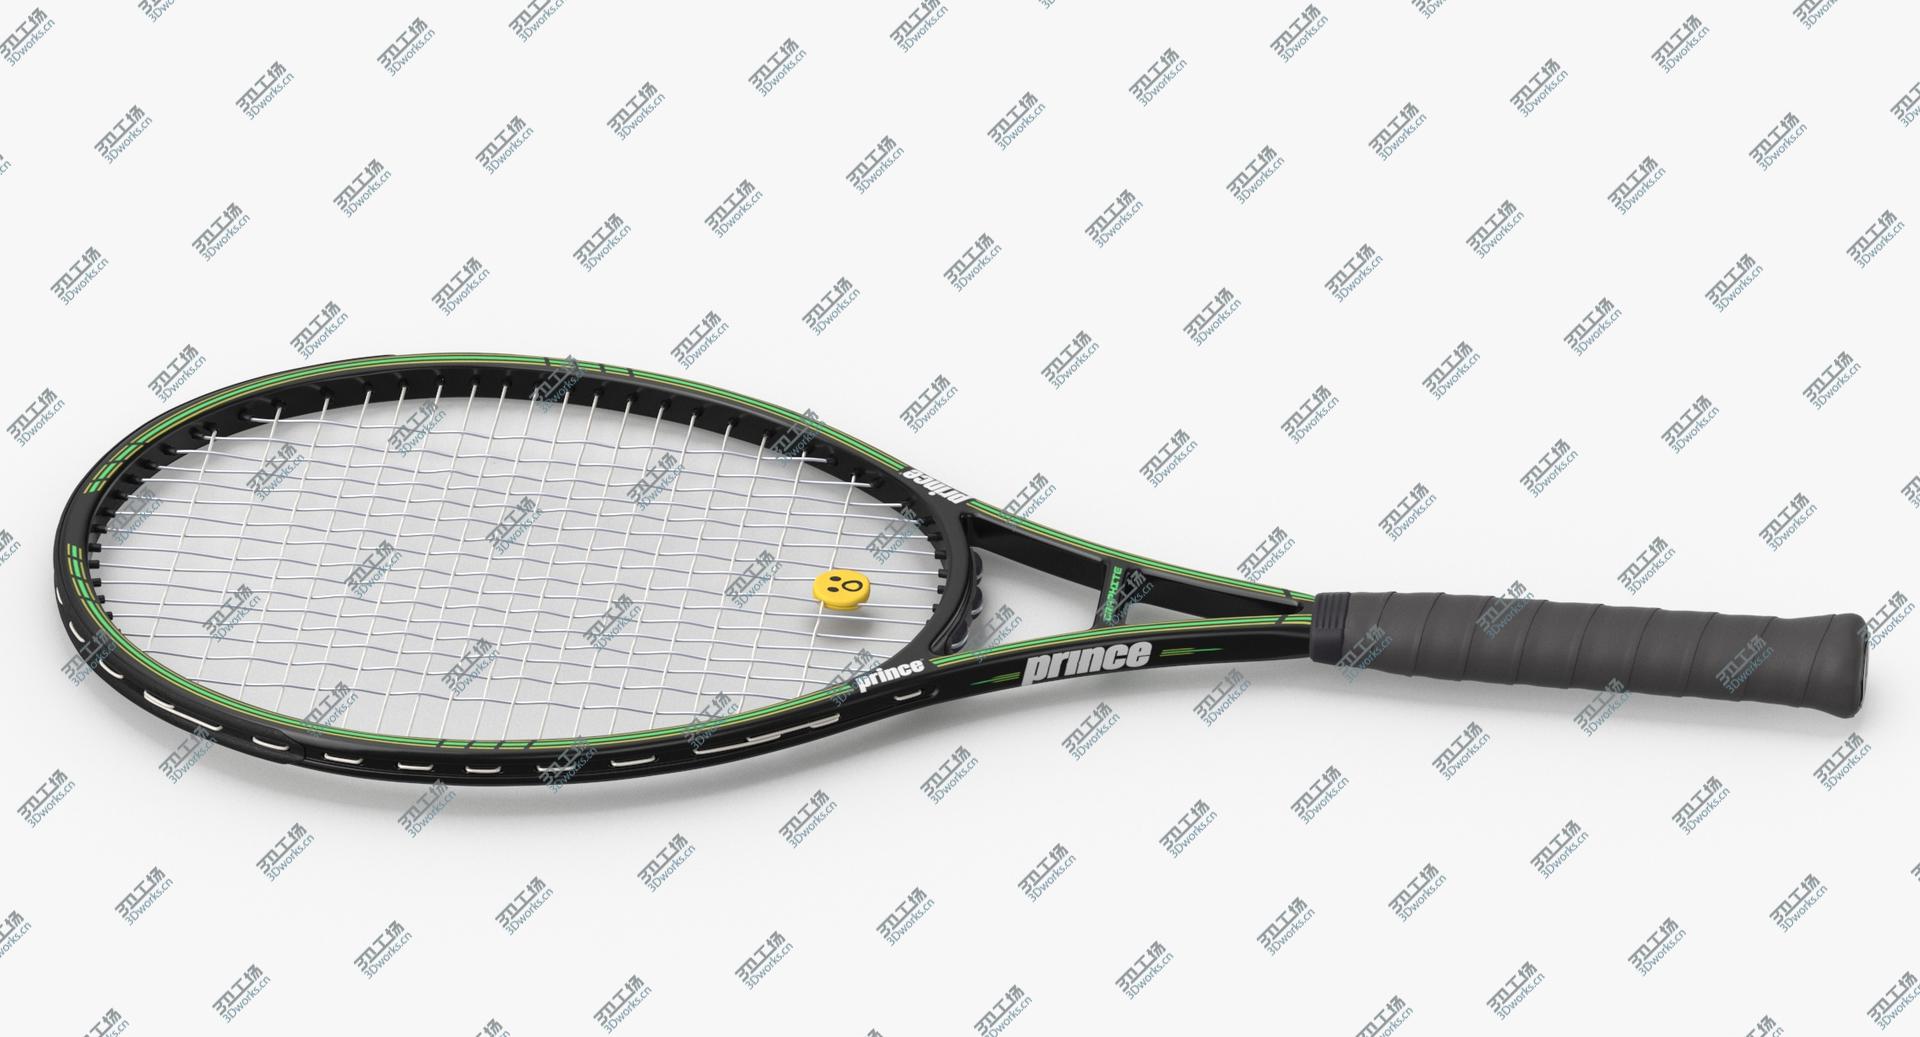 images/goods_img/2021040234/3D Tennis Racket model/3.jpg